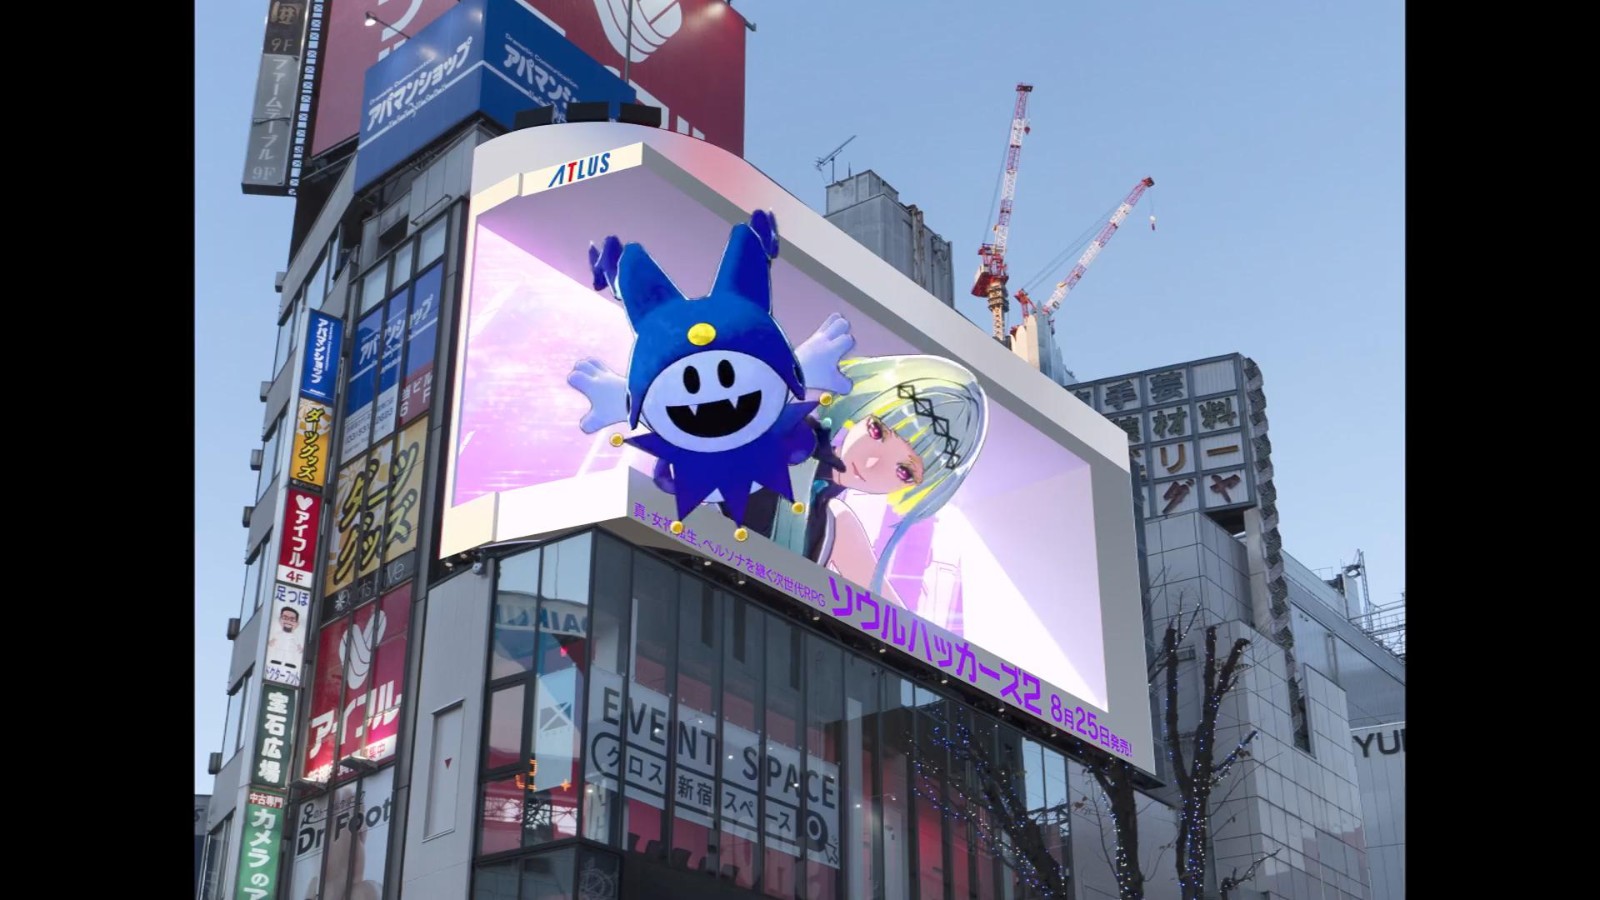 杰克霜精现身日本街头 《灵魂骇客2》投放3D广告_喵绅士h,acg巴士官网导航 二次世界 第4张